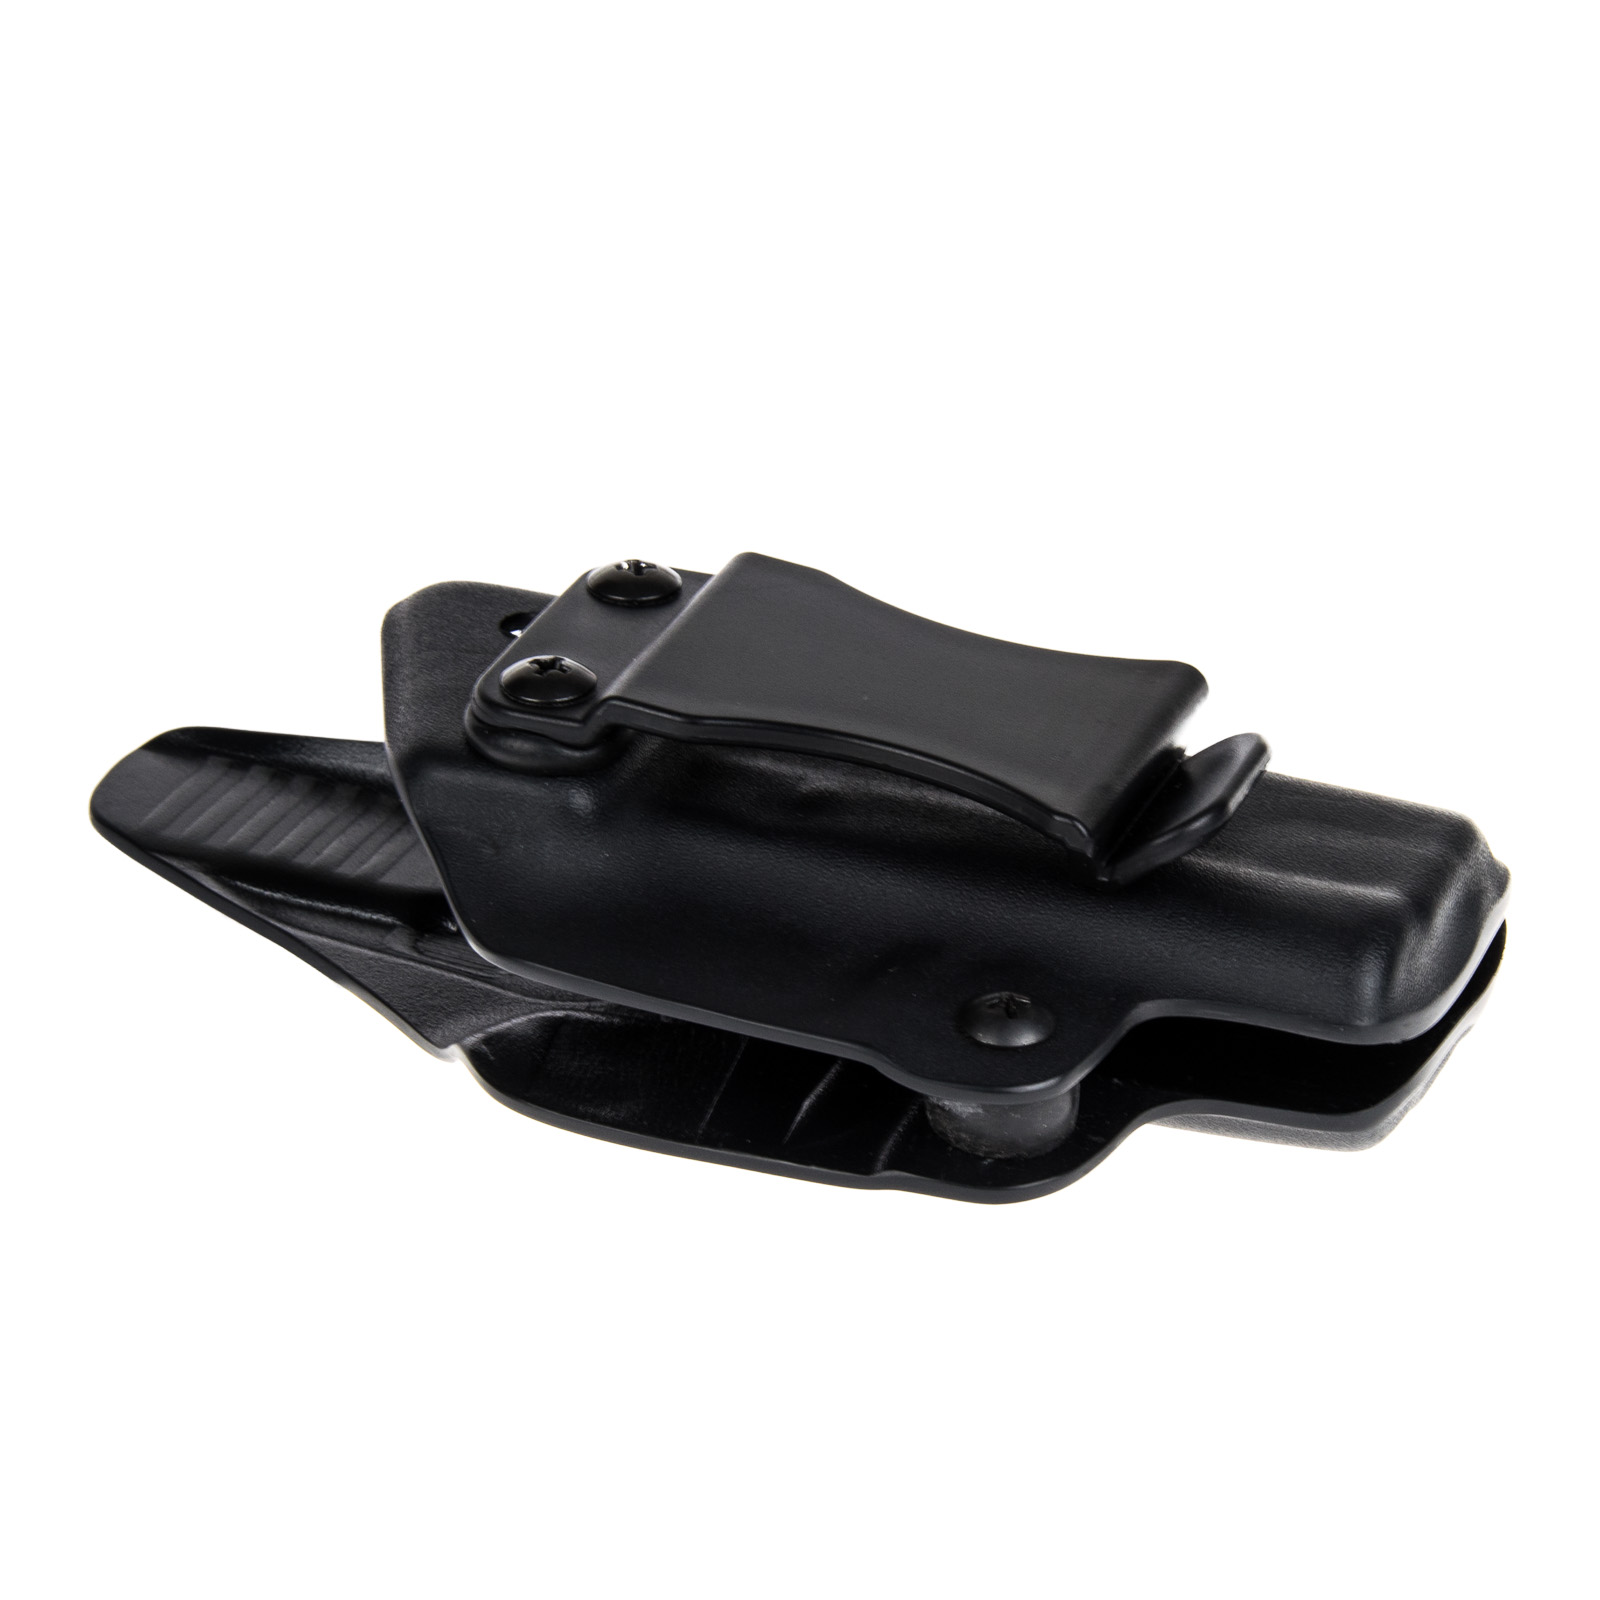 Vnitřní pouzdro RHholster, plný sweatguard, černá/černá (Sig Sauer P226 bez railu)